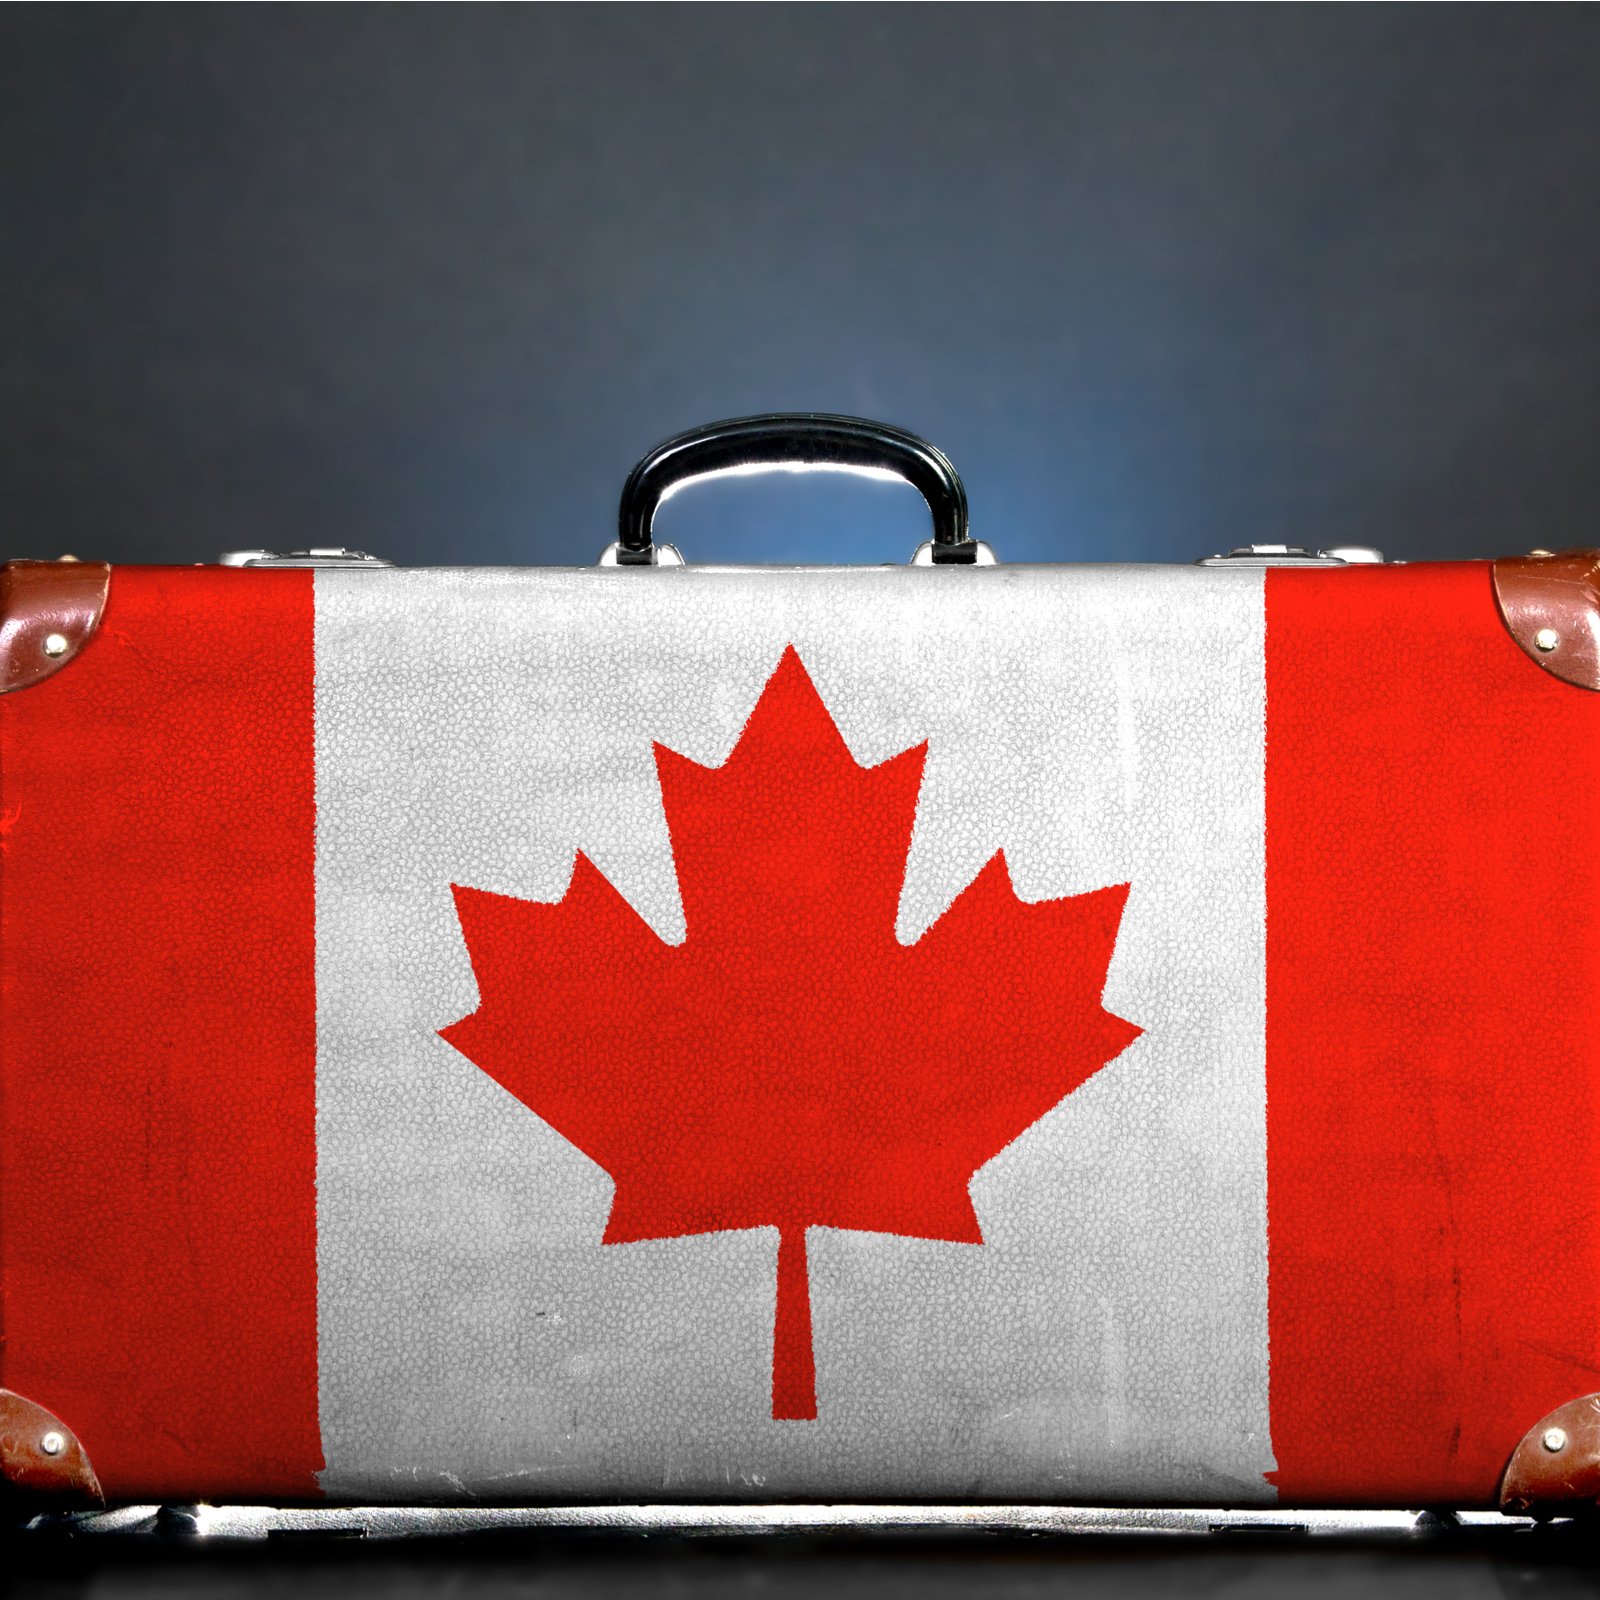 Cblocks Moves to Canada Citing Regulatory Hurdles